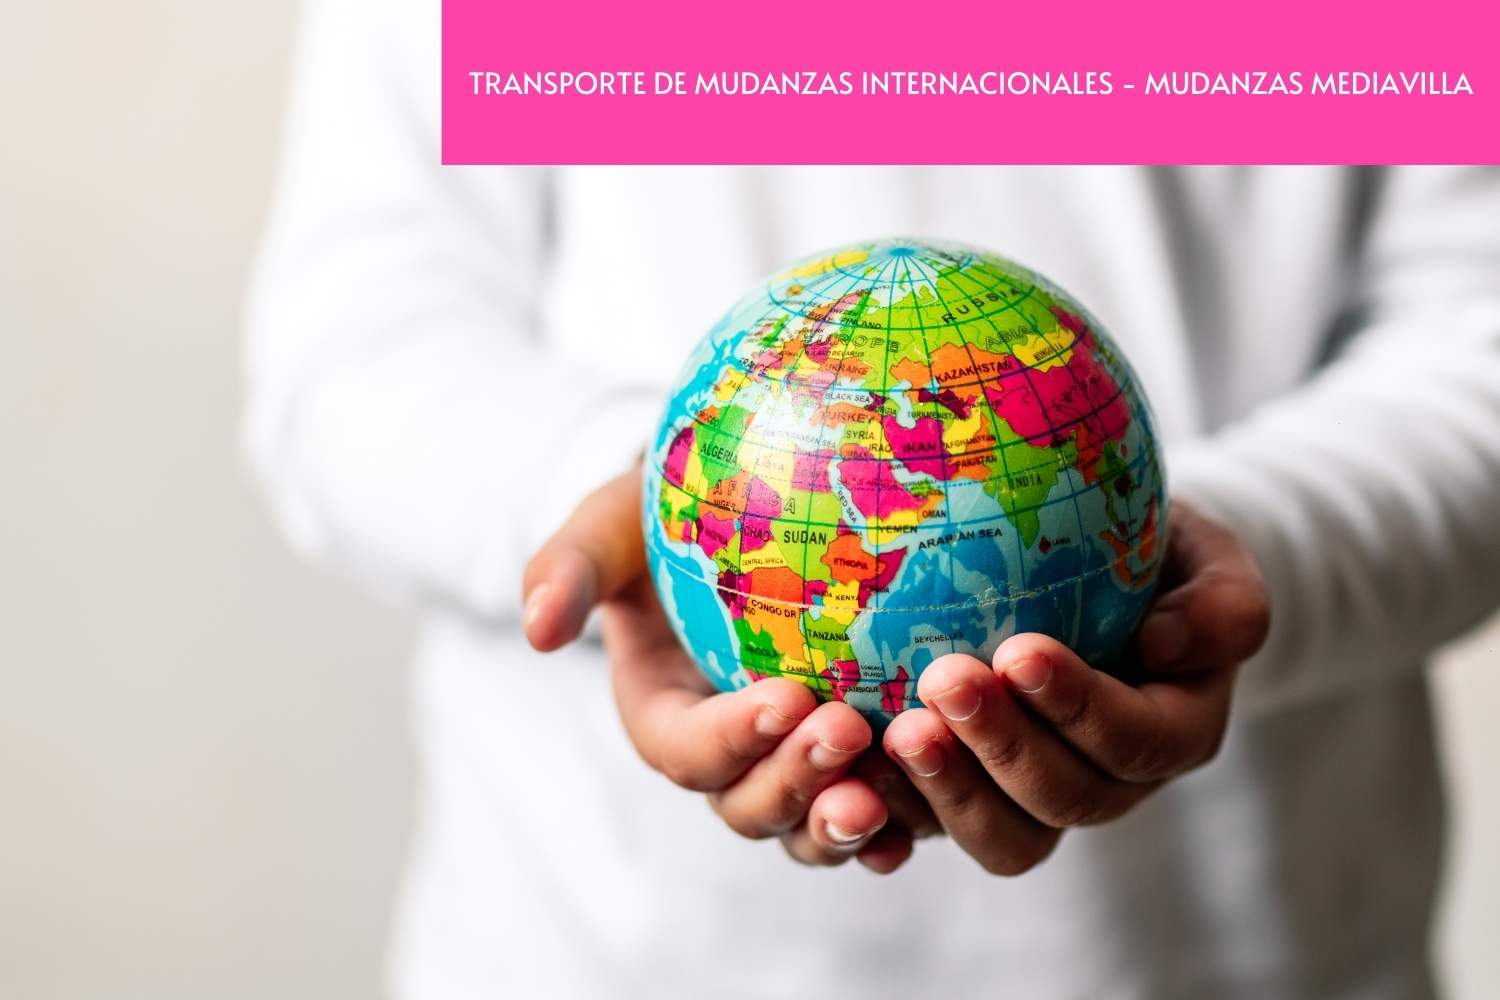 TRANSPORTE DE MUDANZAS INTERNACIONALES - MUDANZAS MEDIAVILLA